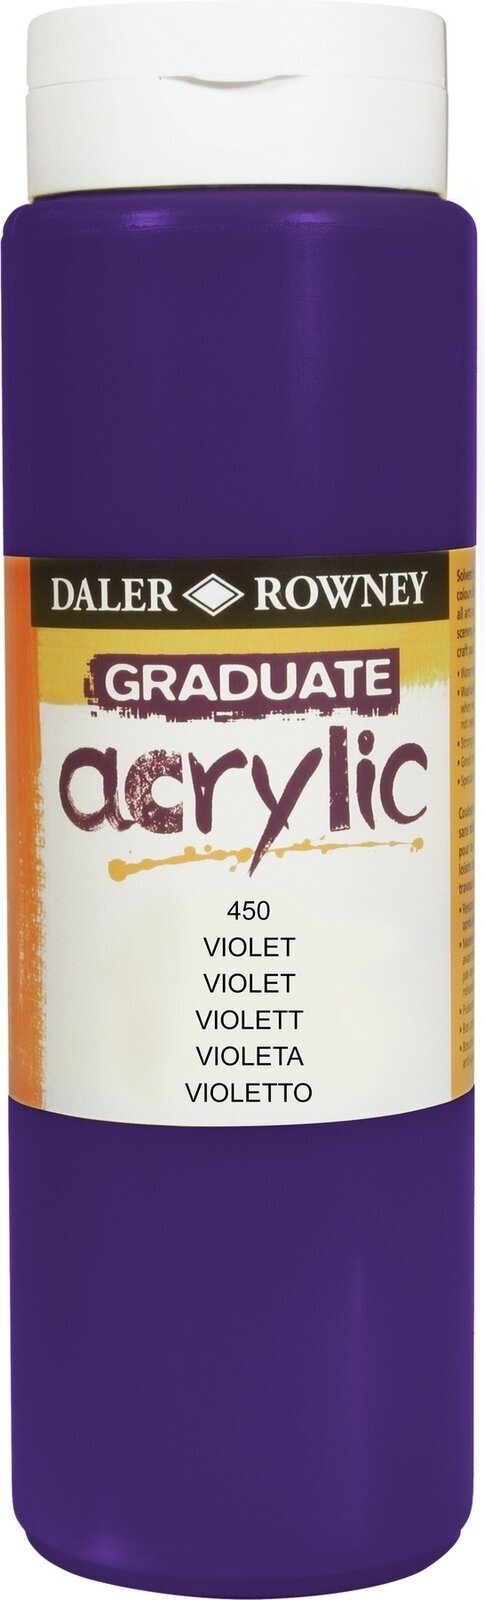 Acrylic Paint Daler Rowney Graduate Acrylic Paint Violet 500 ml 1 pc